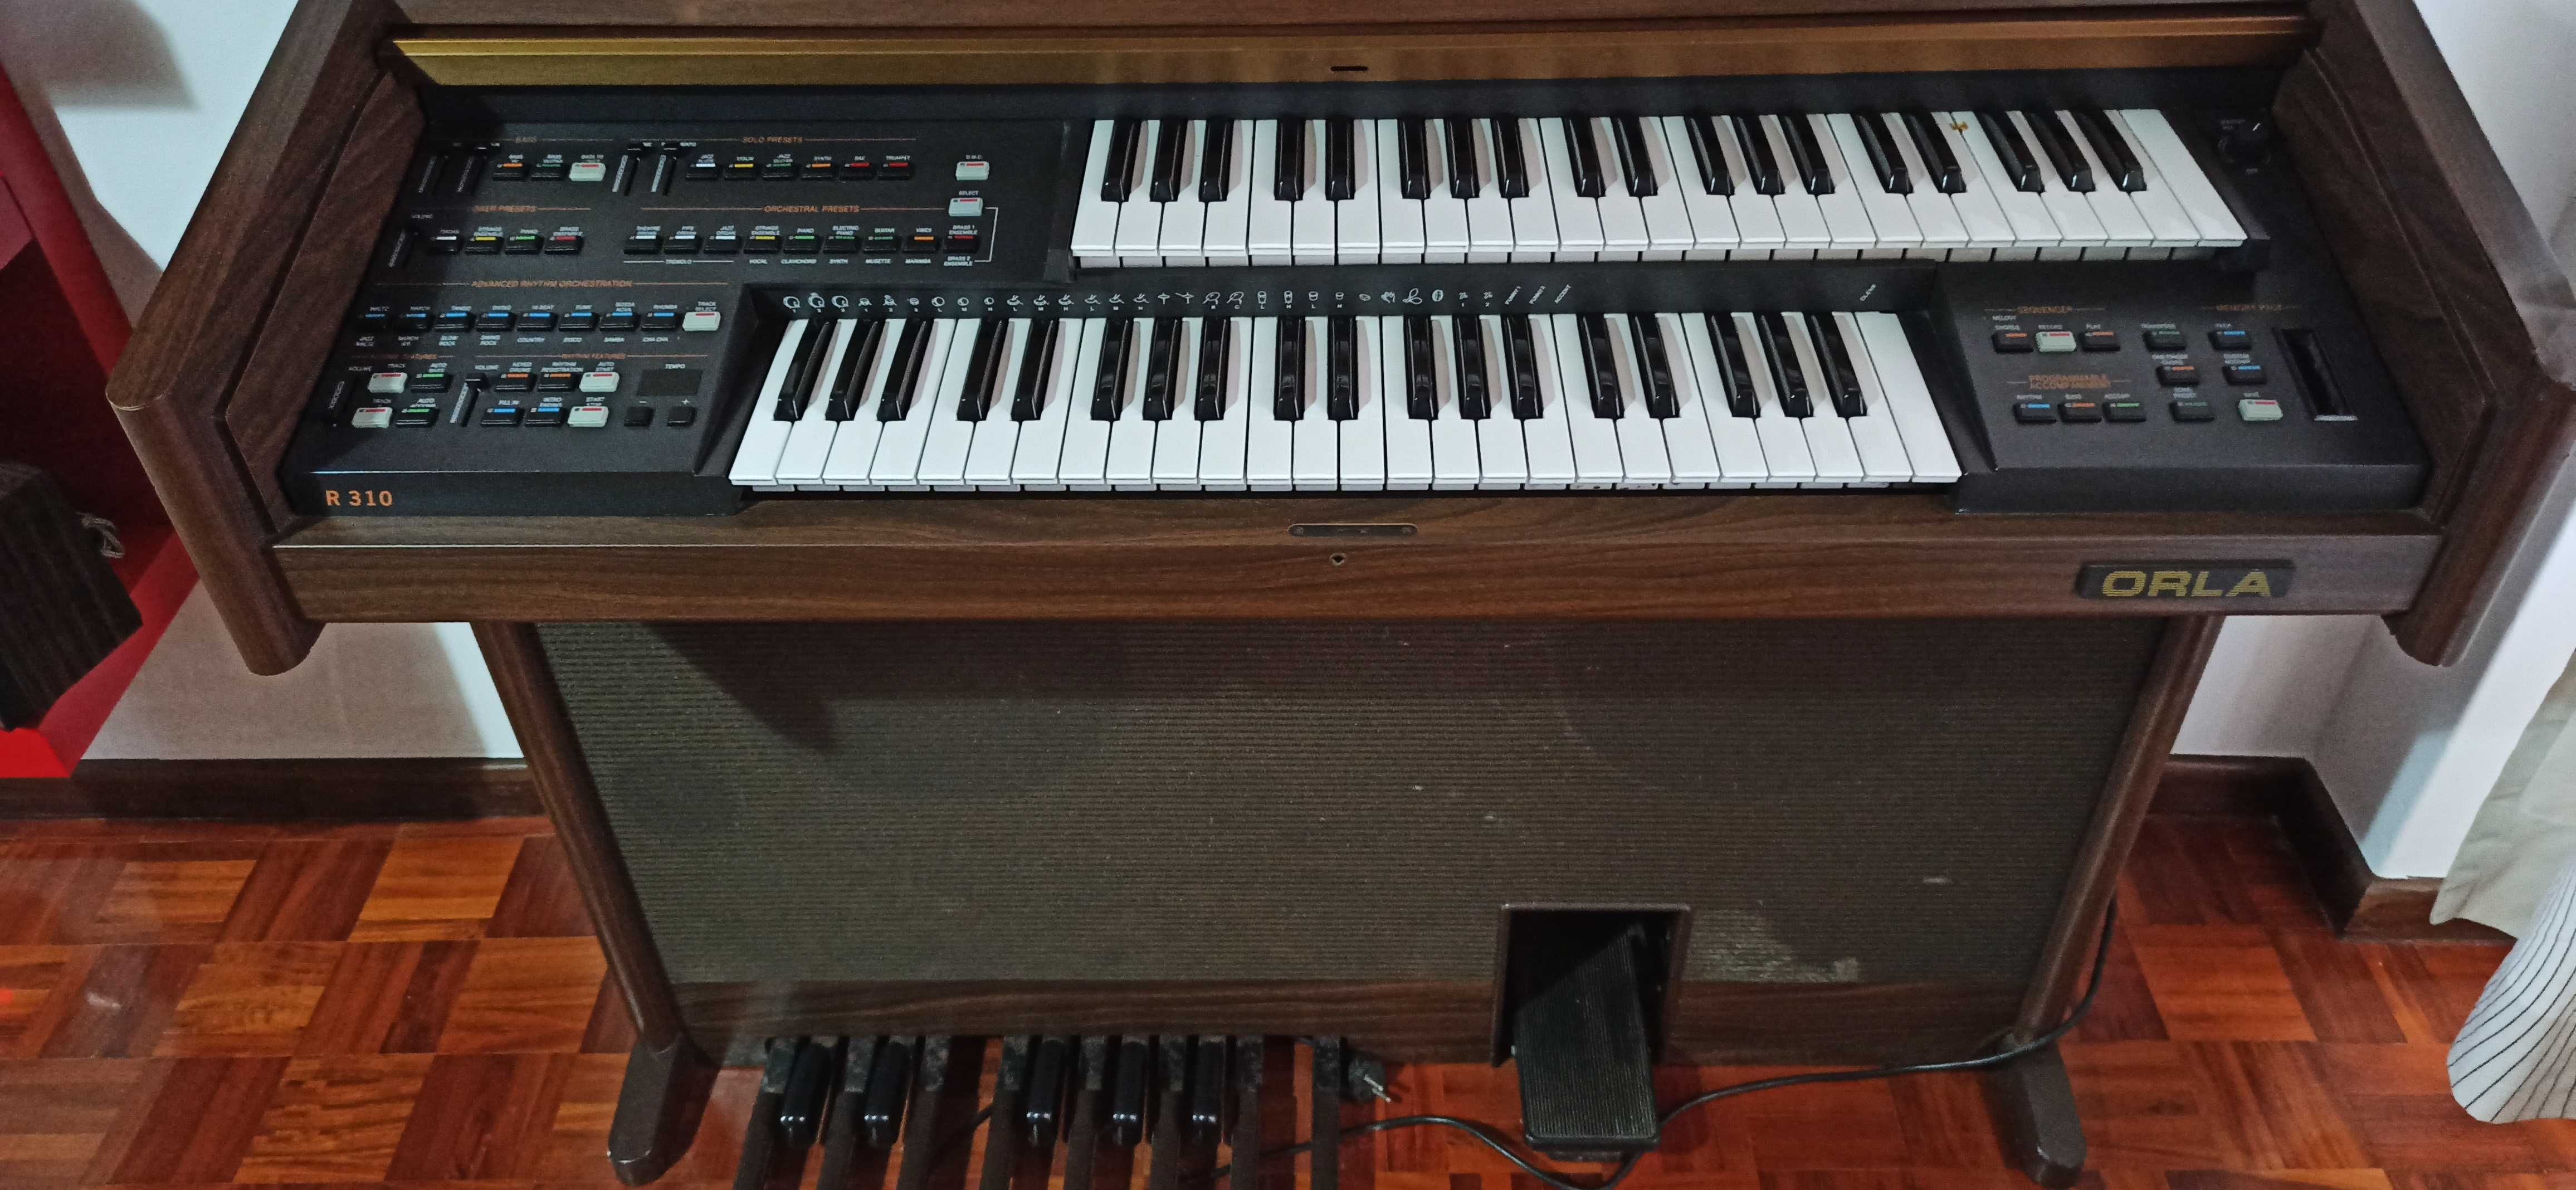 Orgão ORLA R310 (2 teclados)